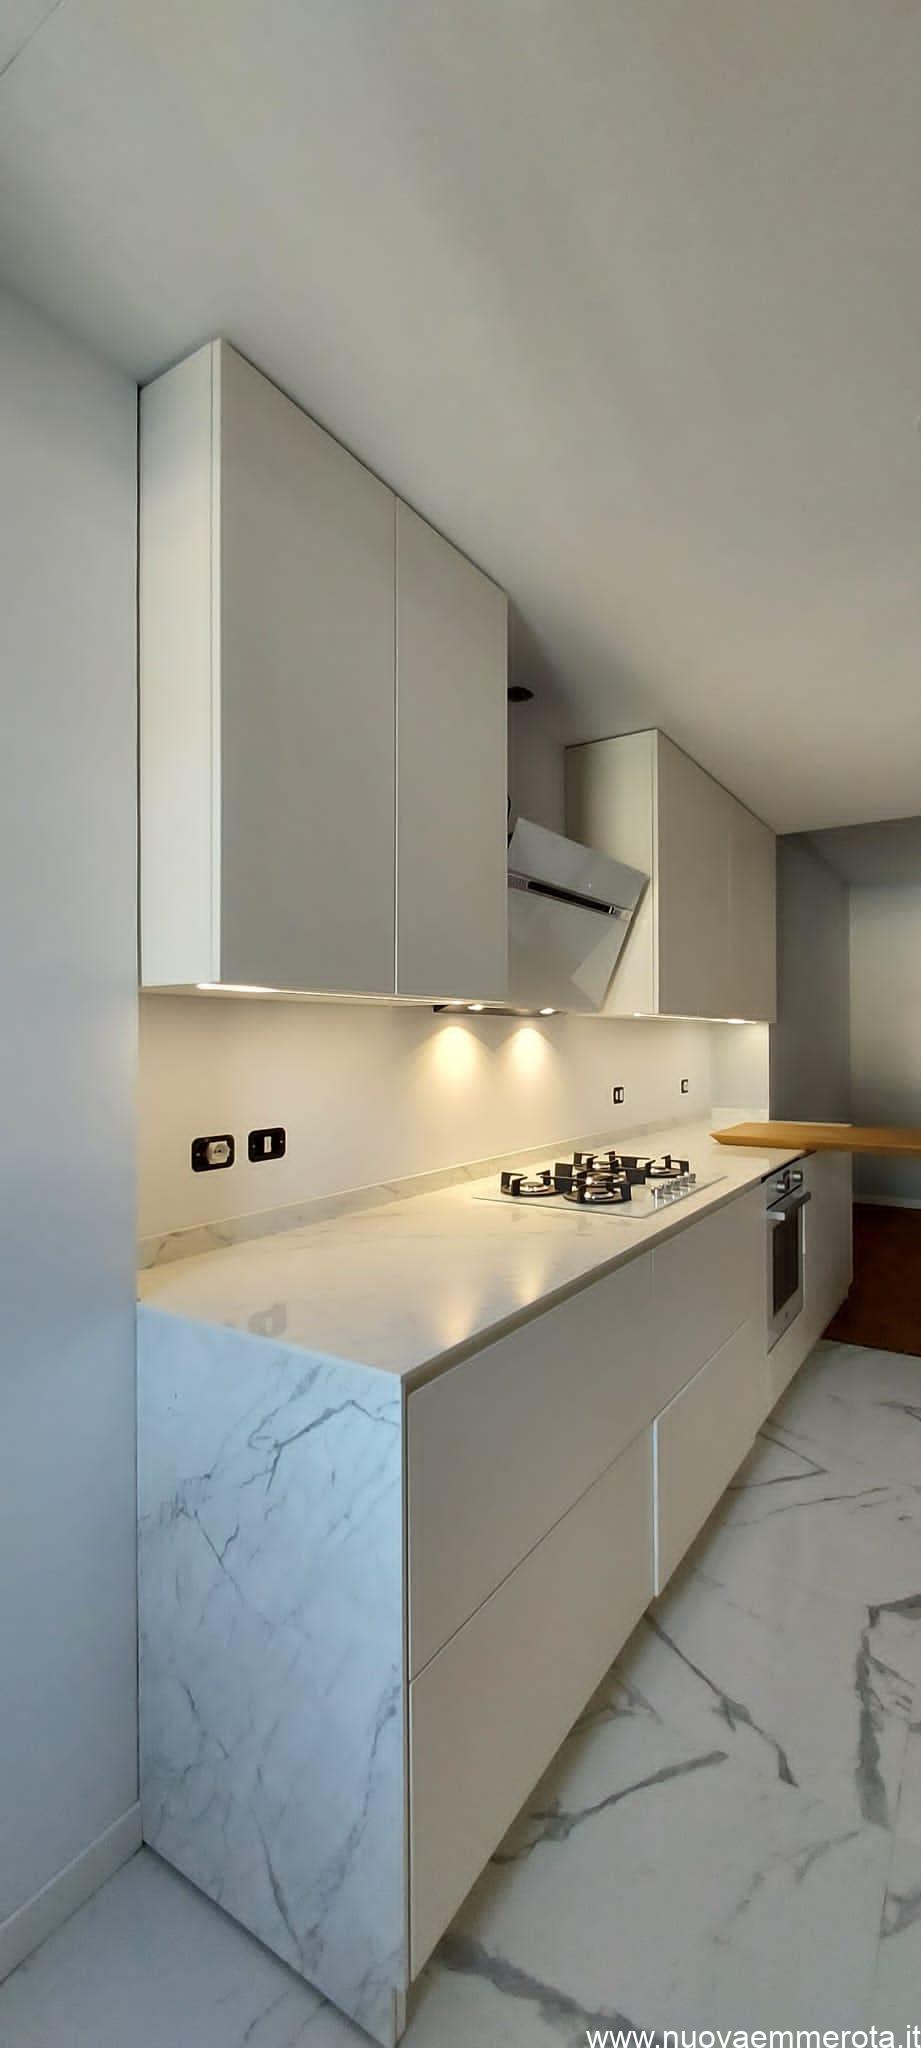 Cucina laccata bianca con profili in marmo.